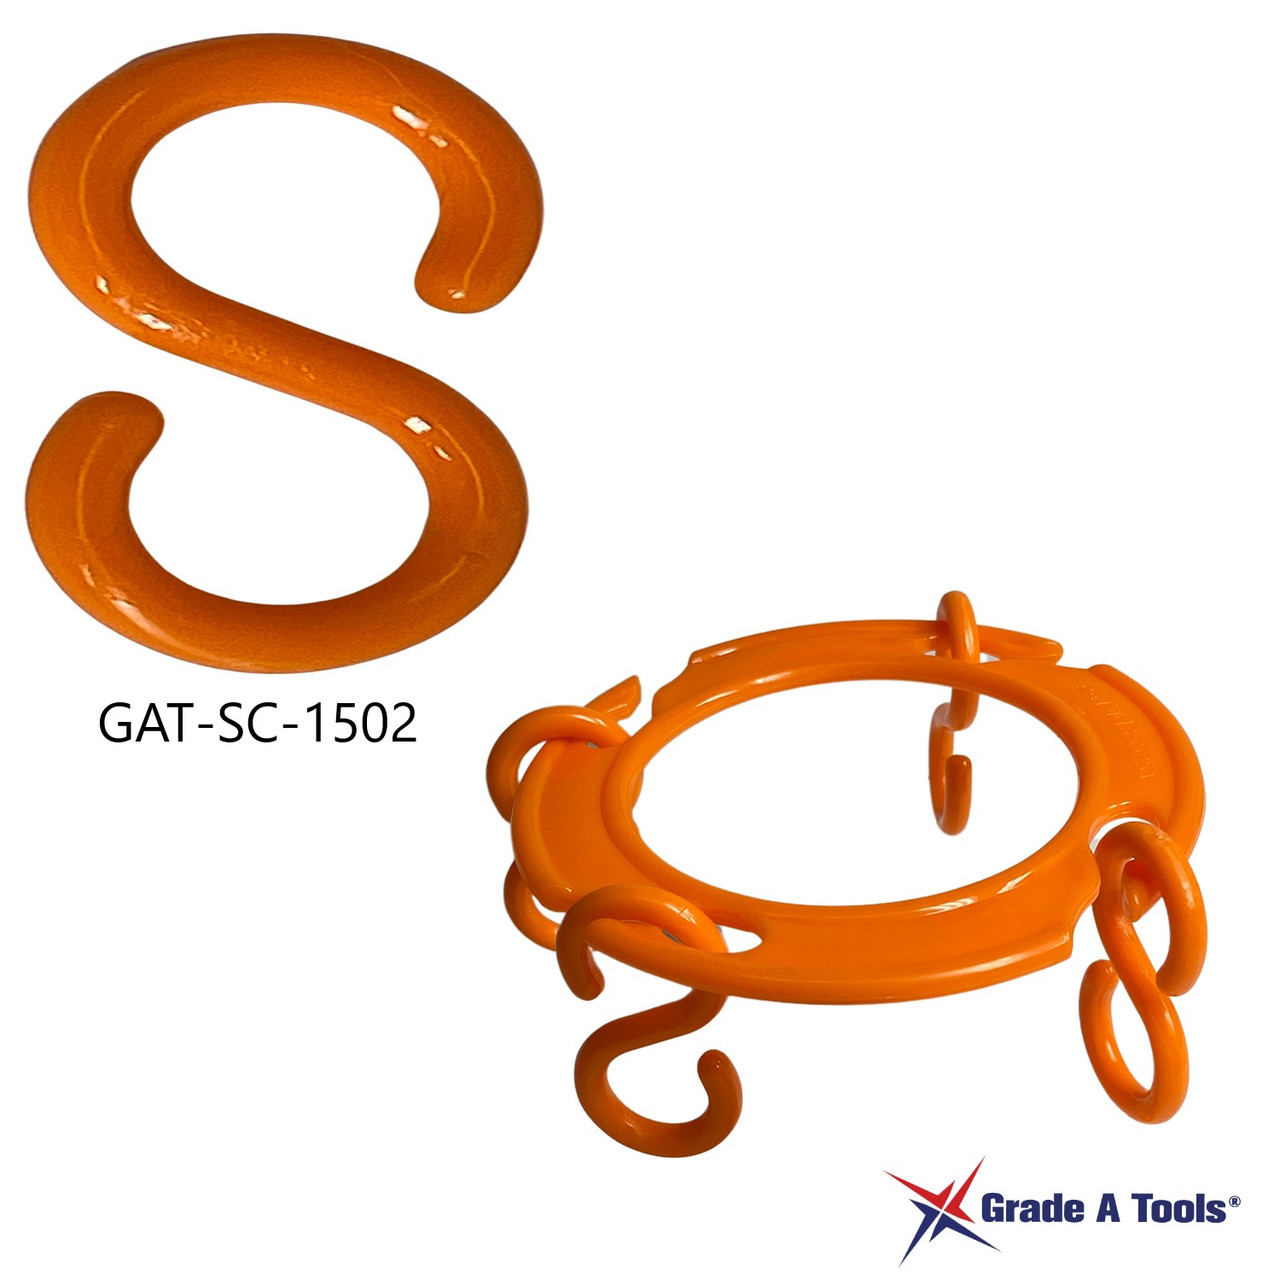 Plastic Safety Chain Orange S - Hook Orange  2-1/4" (56mm) C